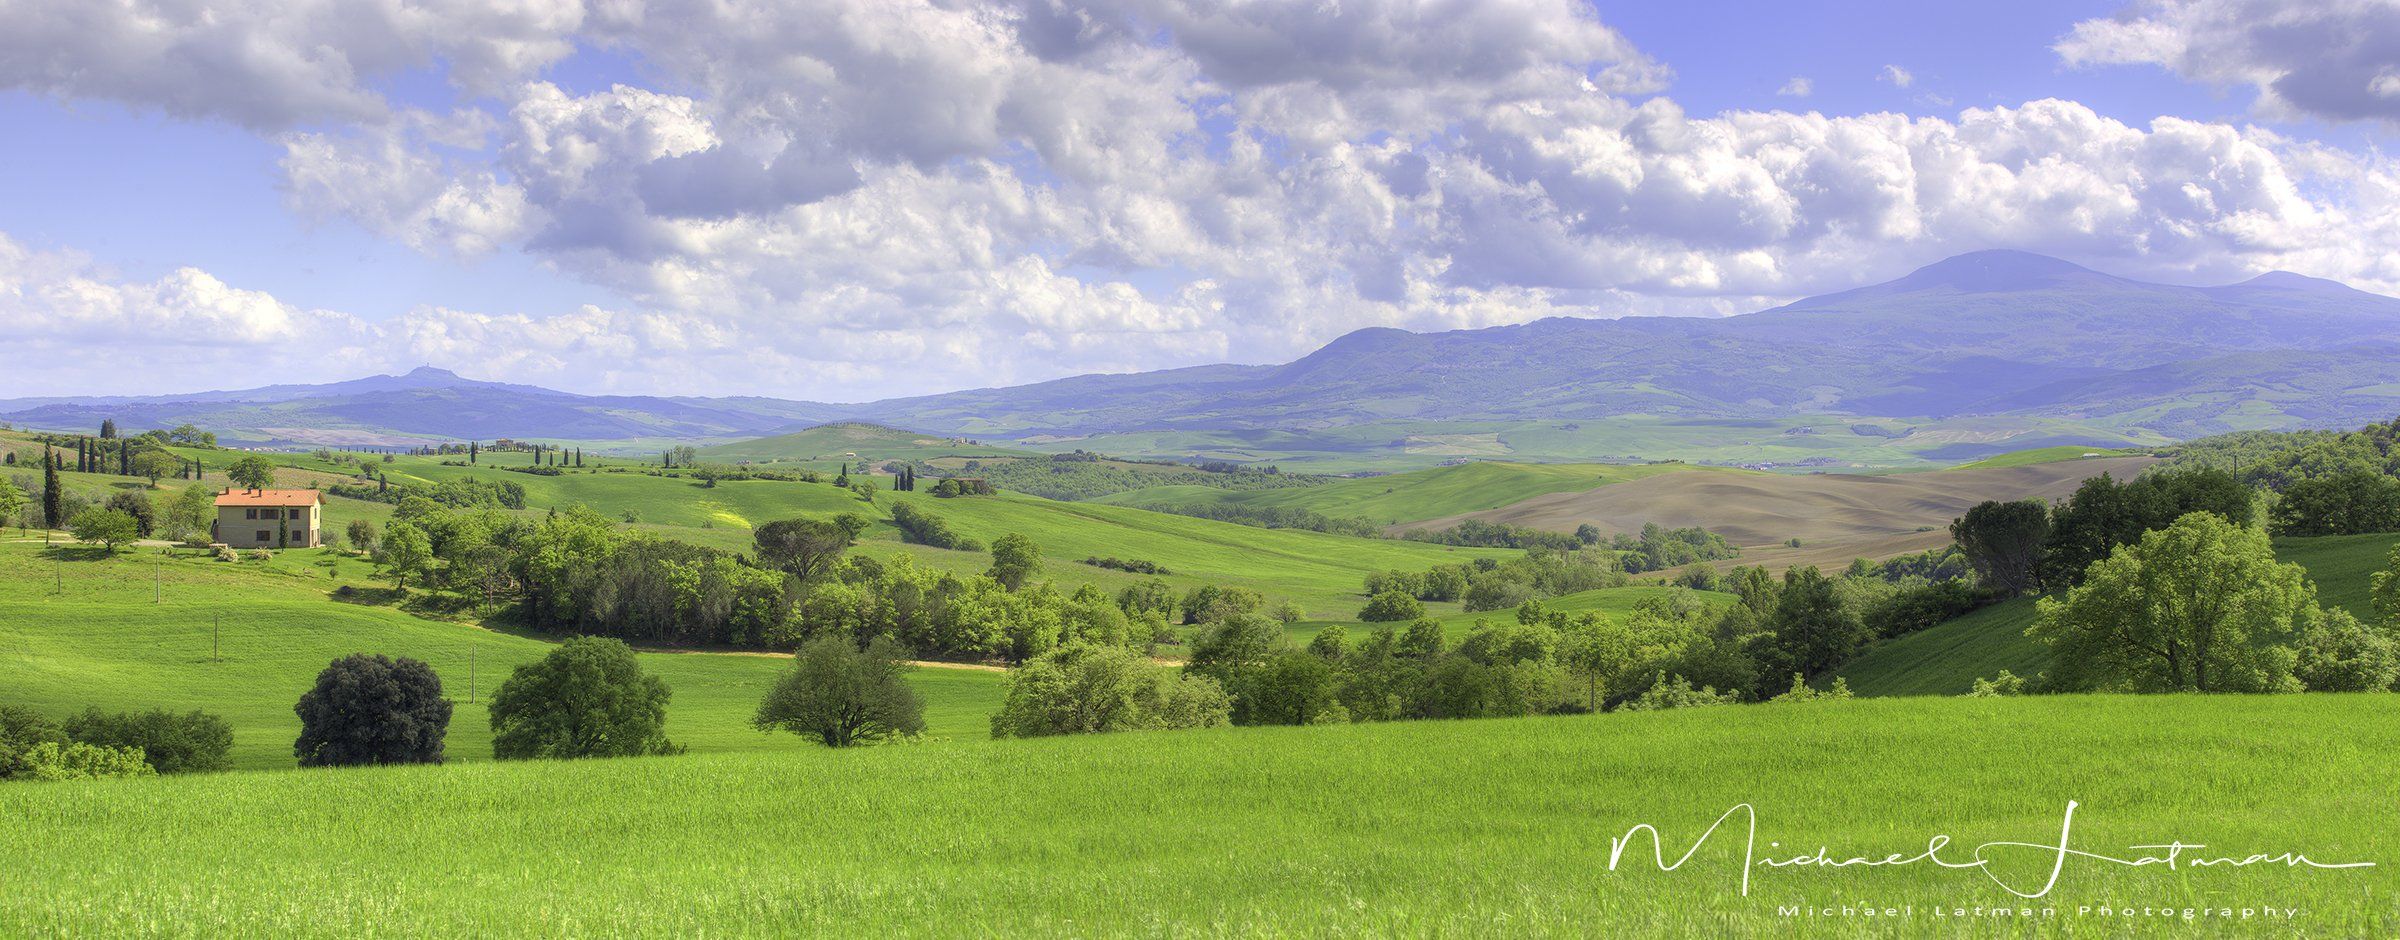 Италия,Тоскань,весна,красота,зелень, цветы,небо,пастораль,пейзаж, Michael Latman